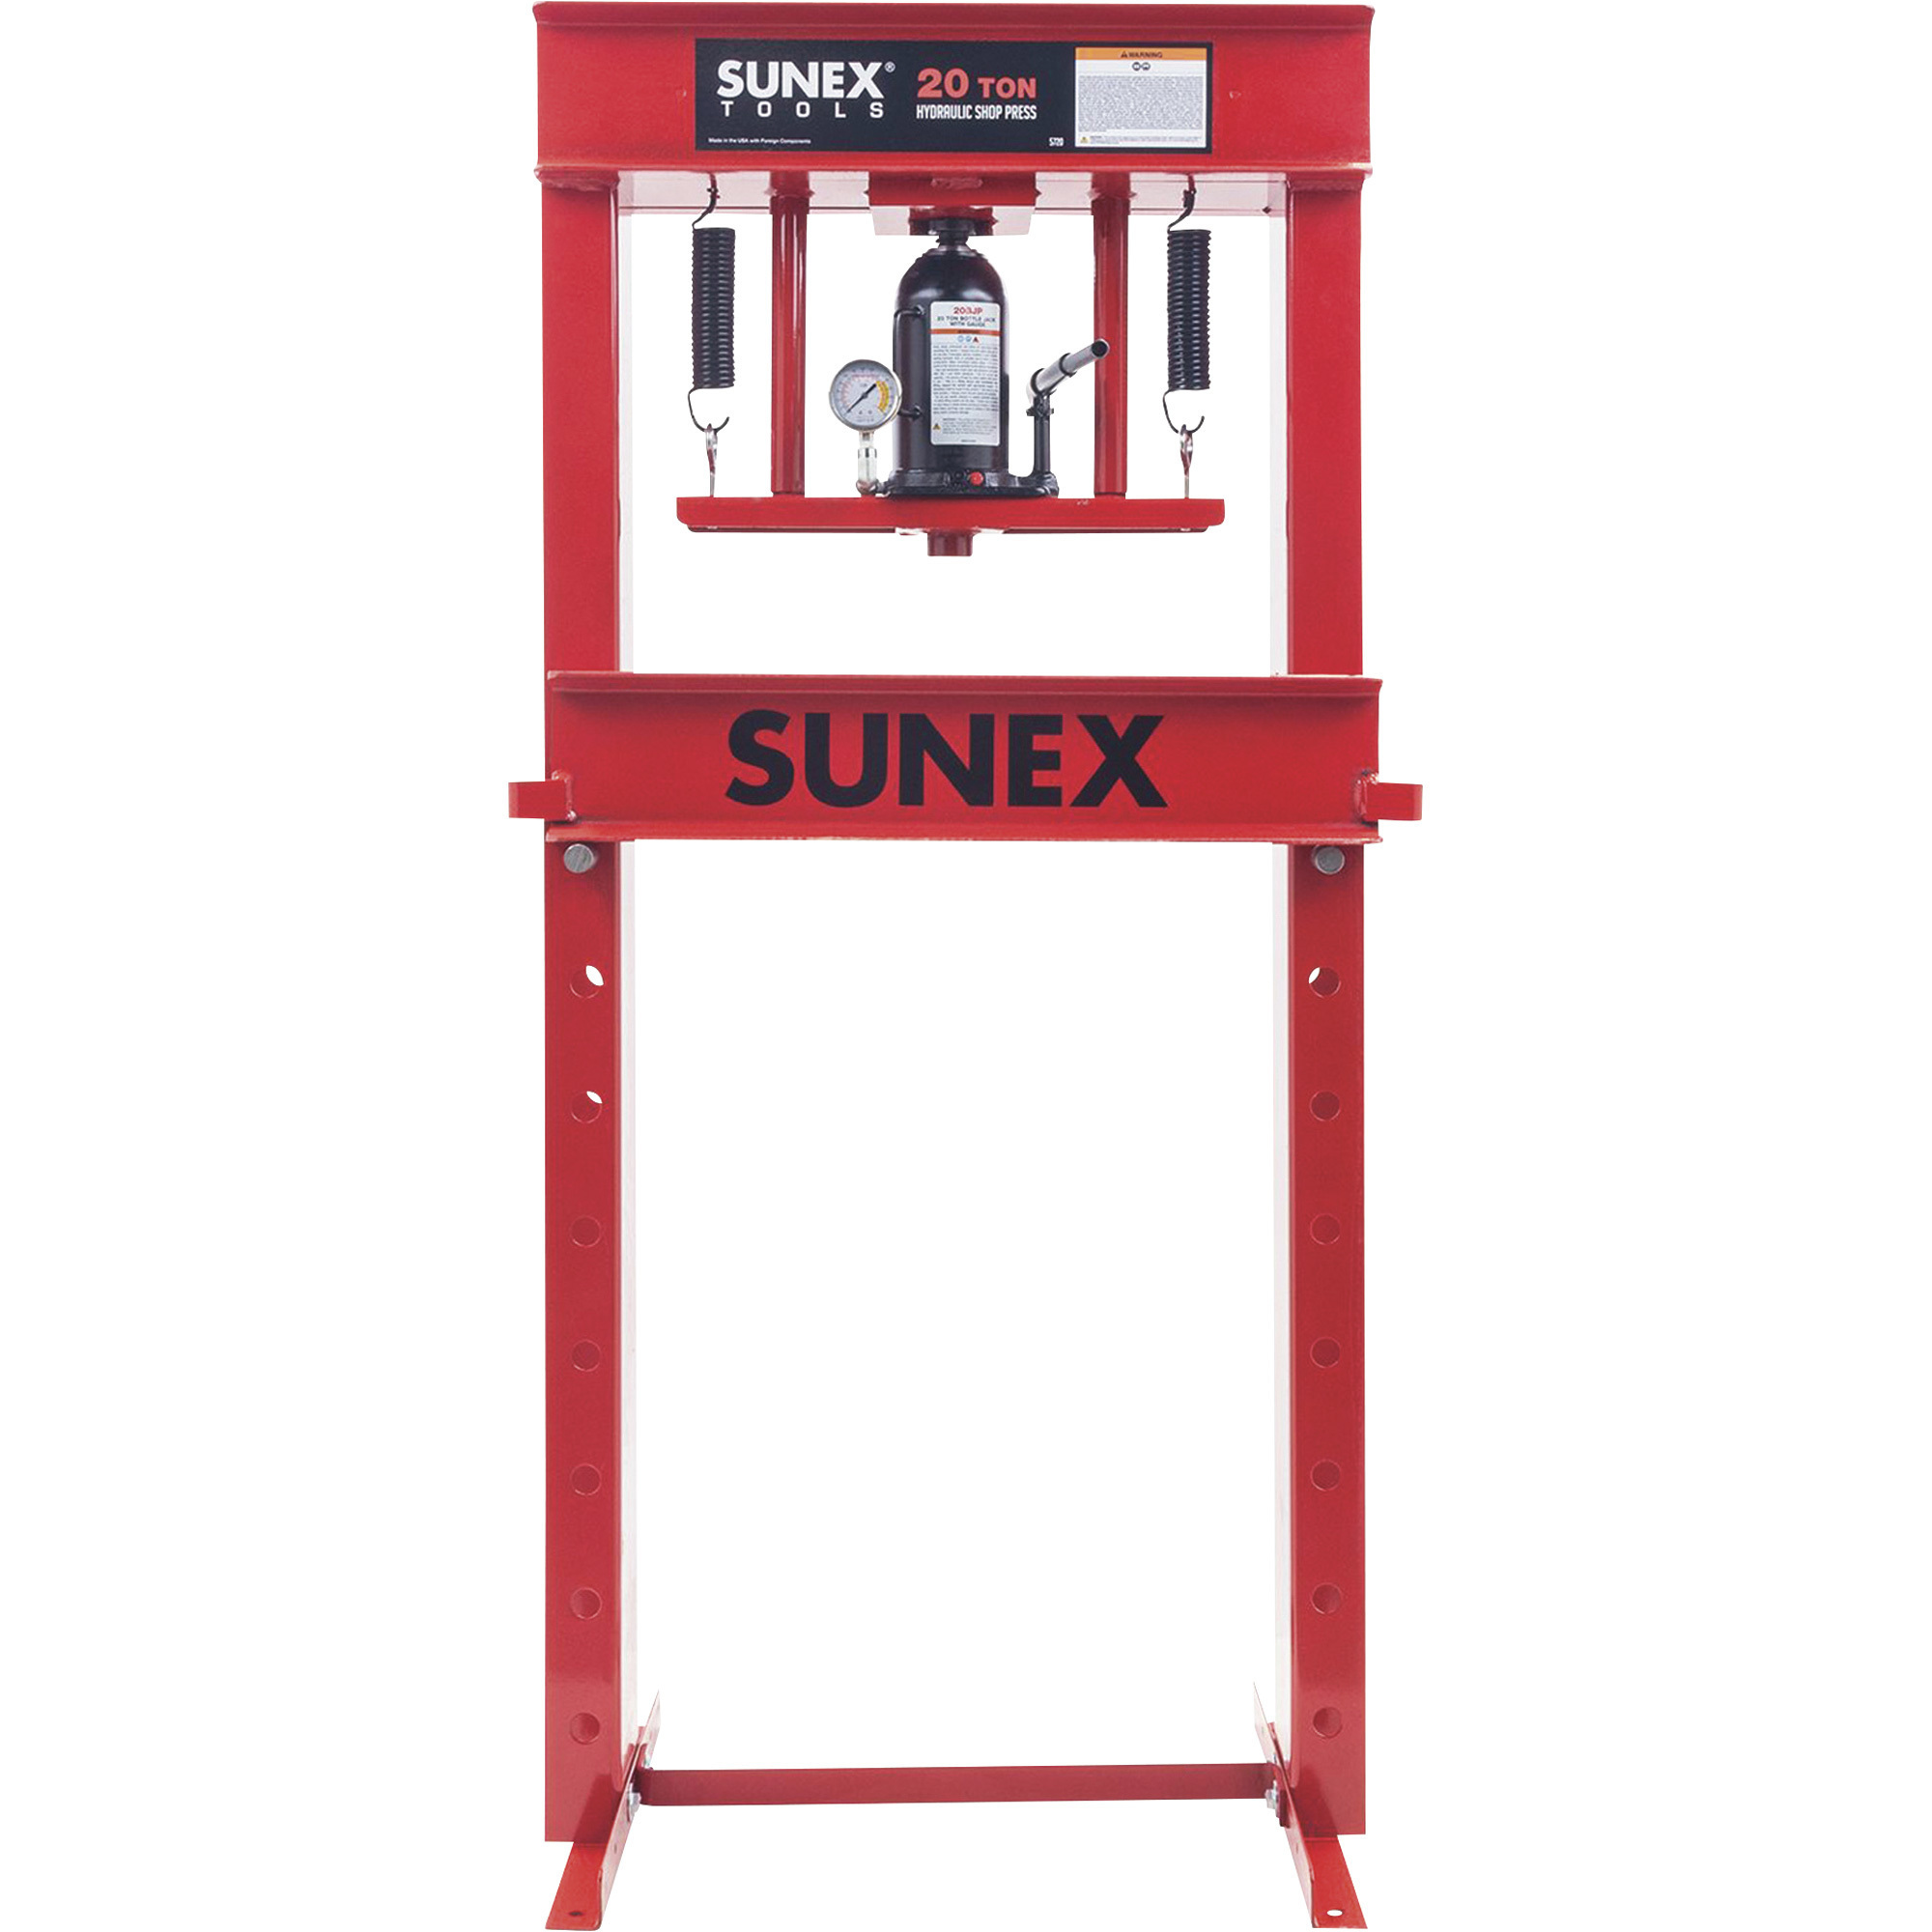 SUNEX 20-Ton Manual Shop Press, Model 5720